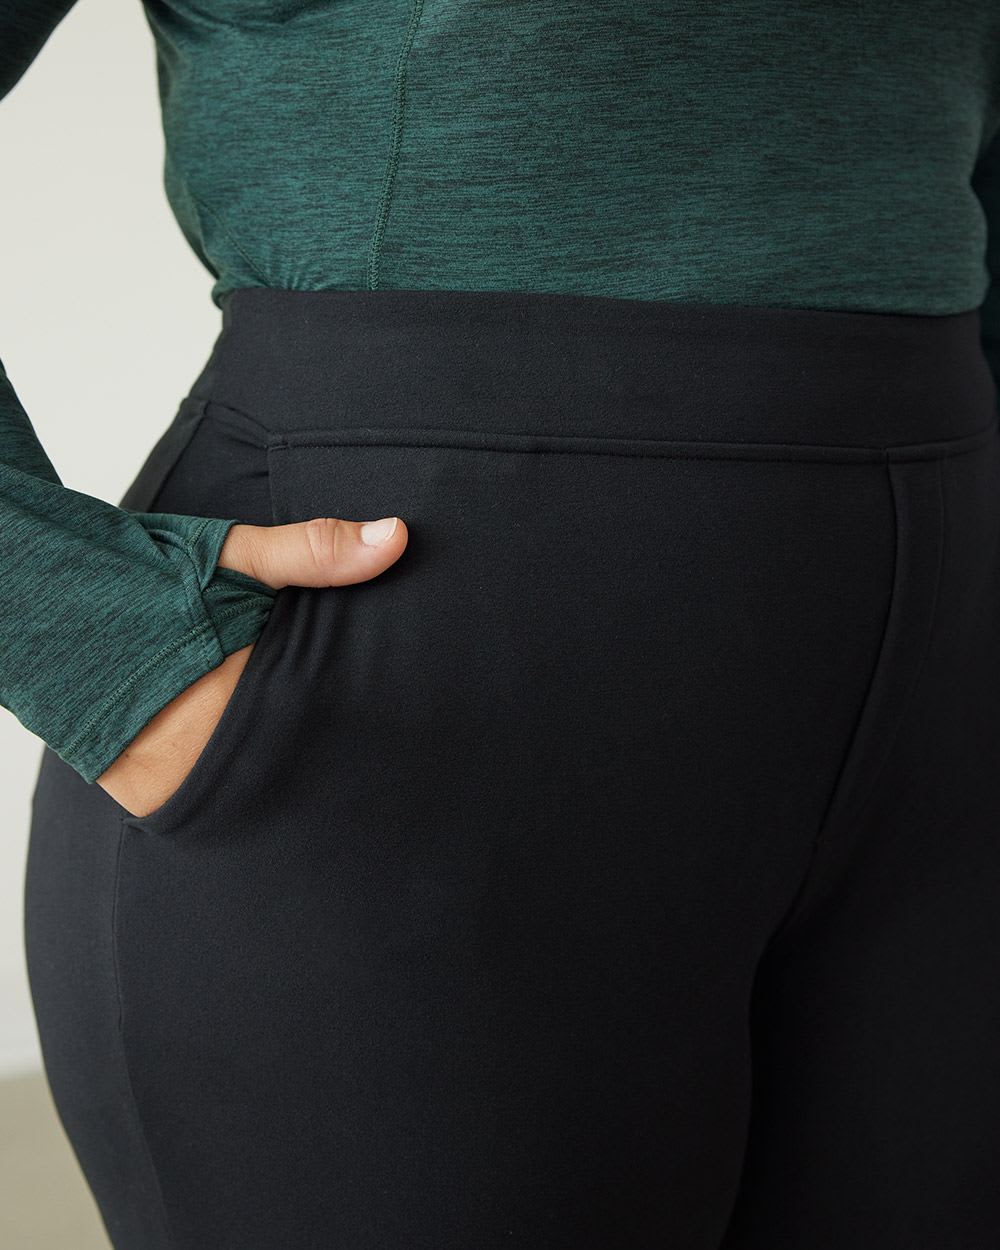 Pantalon thermique à ourlet ajustable - Hyba, Régulier